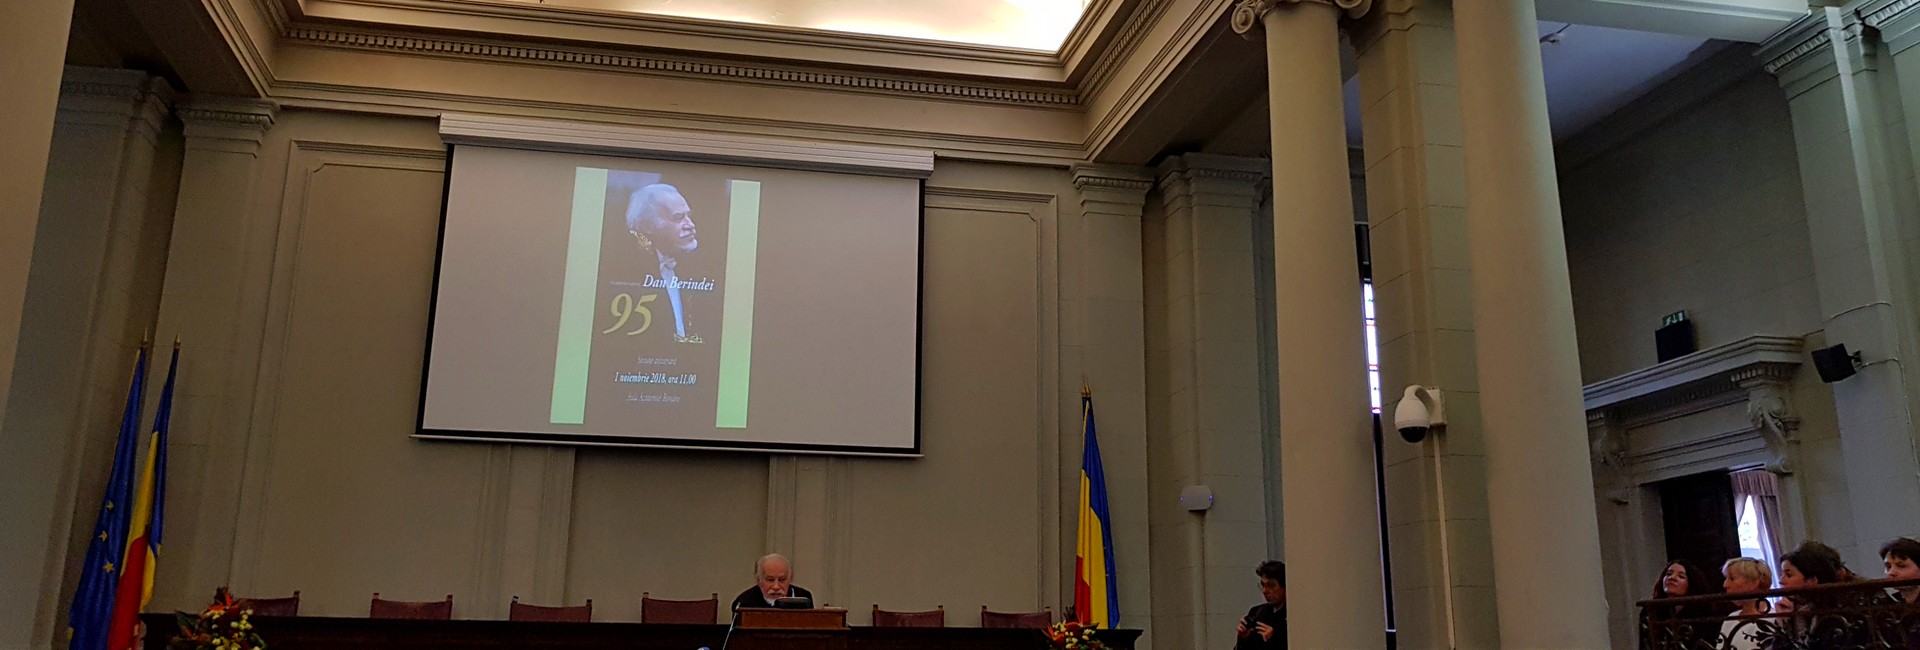 Dan Berindei mare istoric şi patriot elogiat la 95 ani la Academia Română de către Răzvan Theodorescu Eugen Simion Ioan-Aurel Pop slider